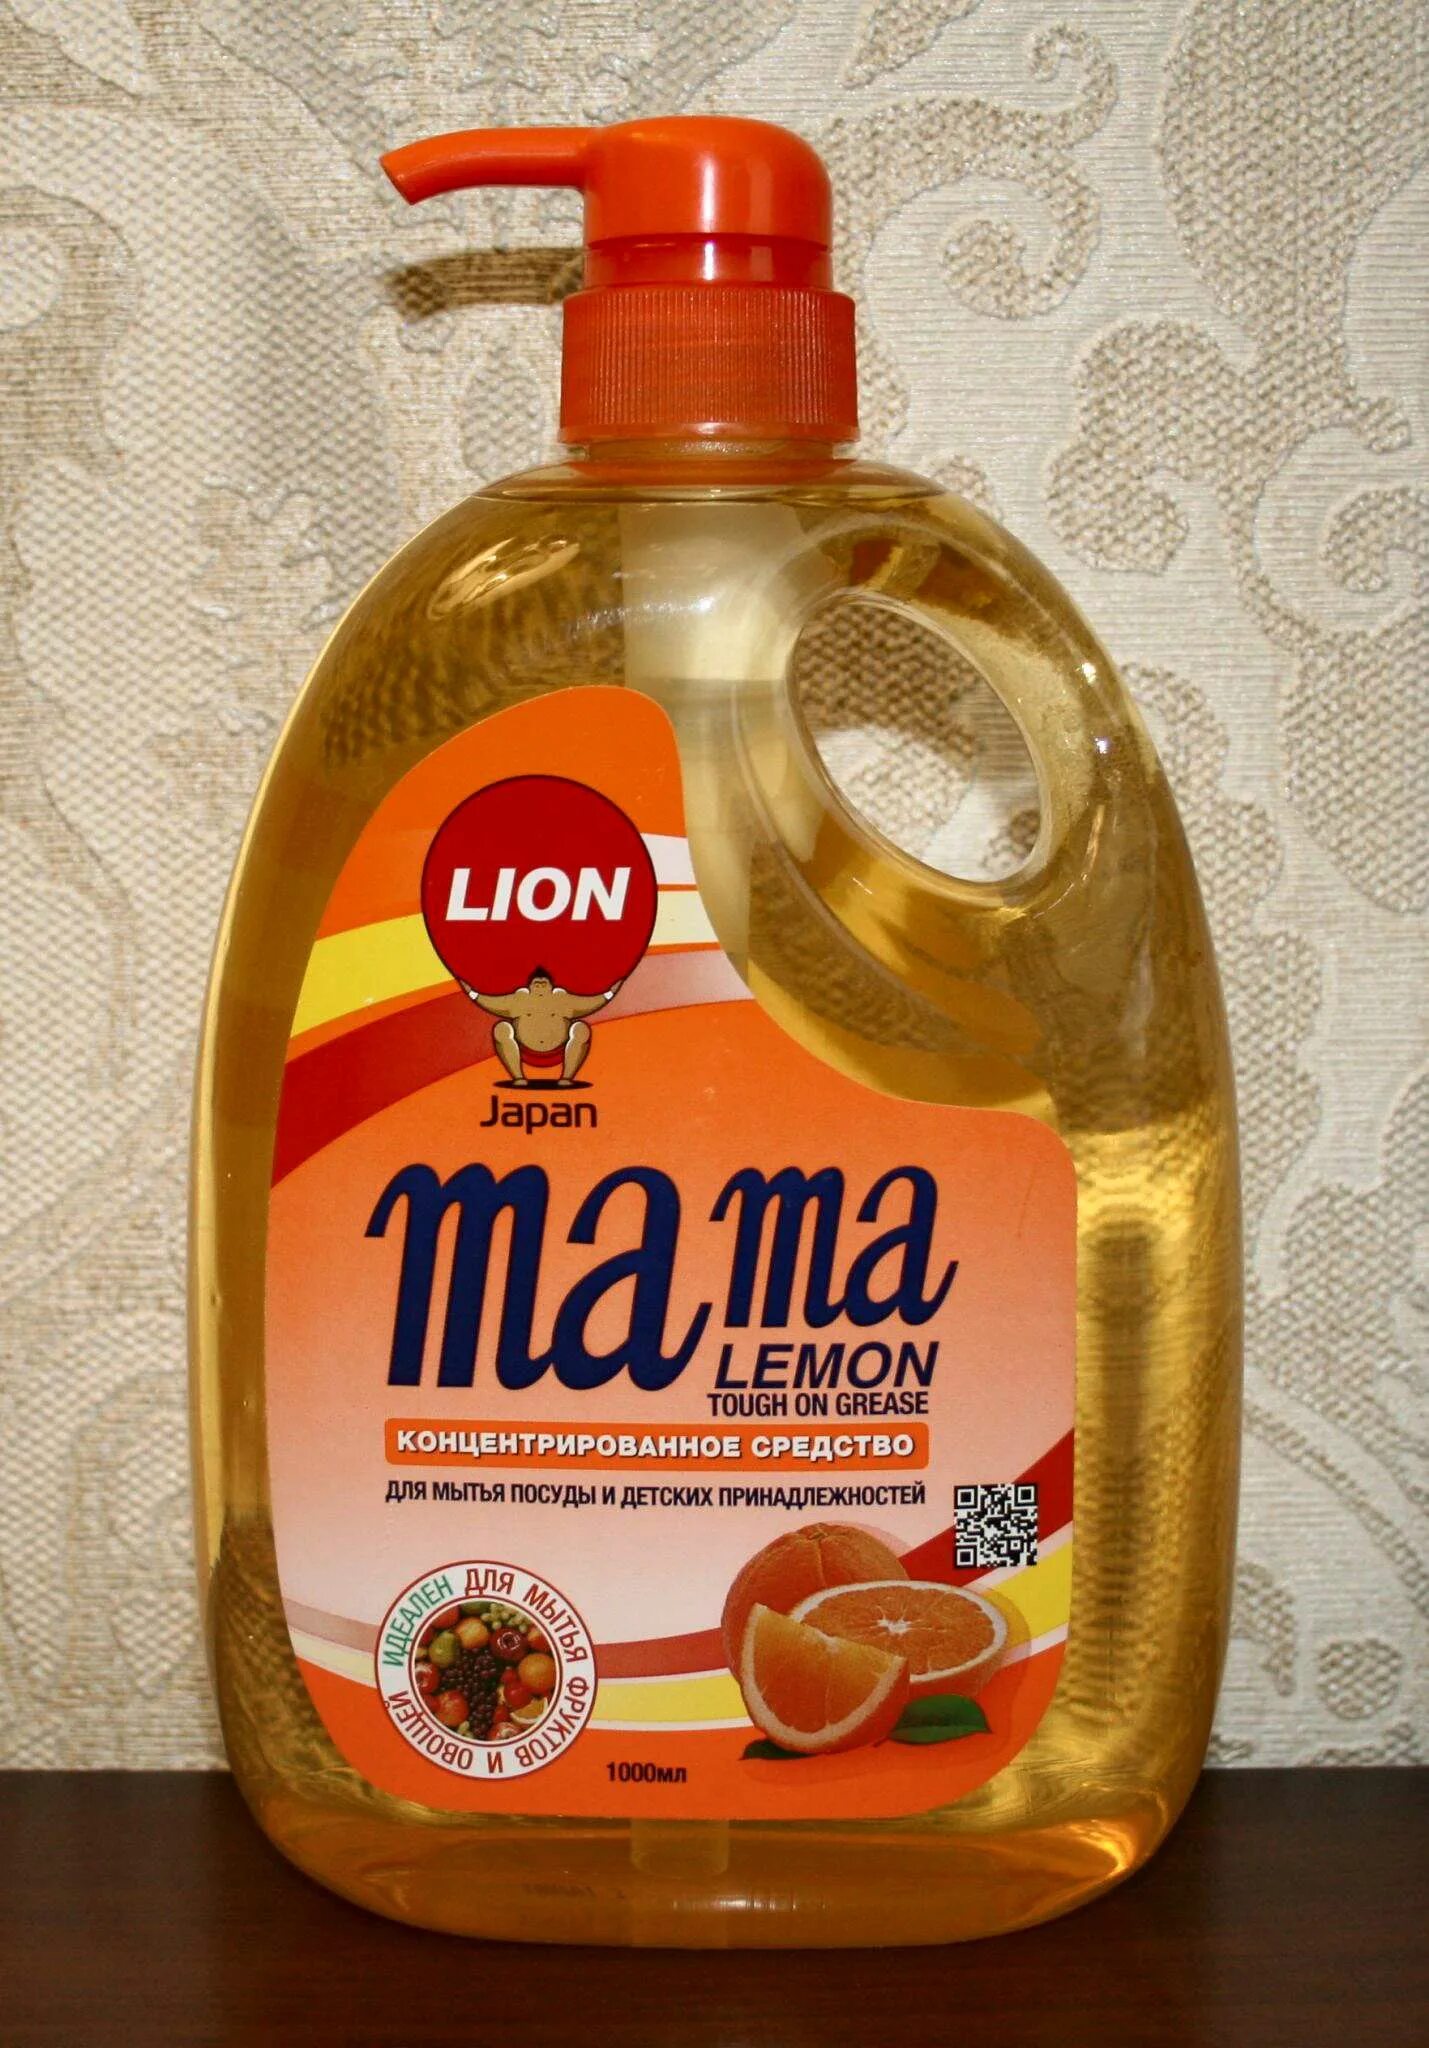 Средство для посуды мама. Моющее средство мама лимон Япония. Гель для посуды mama Lemon. Средство для мытья посуды мама лимон.